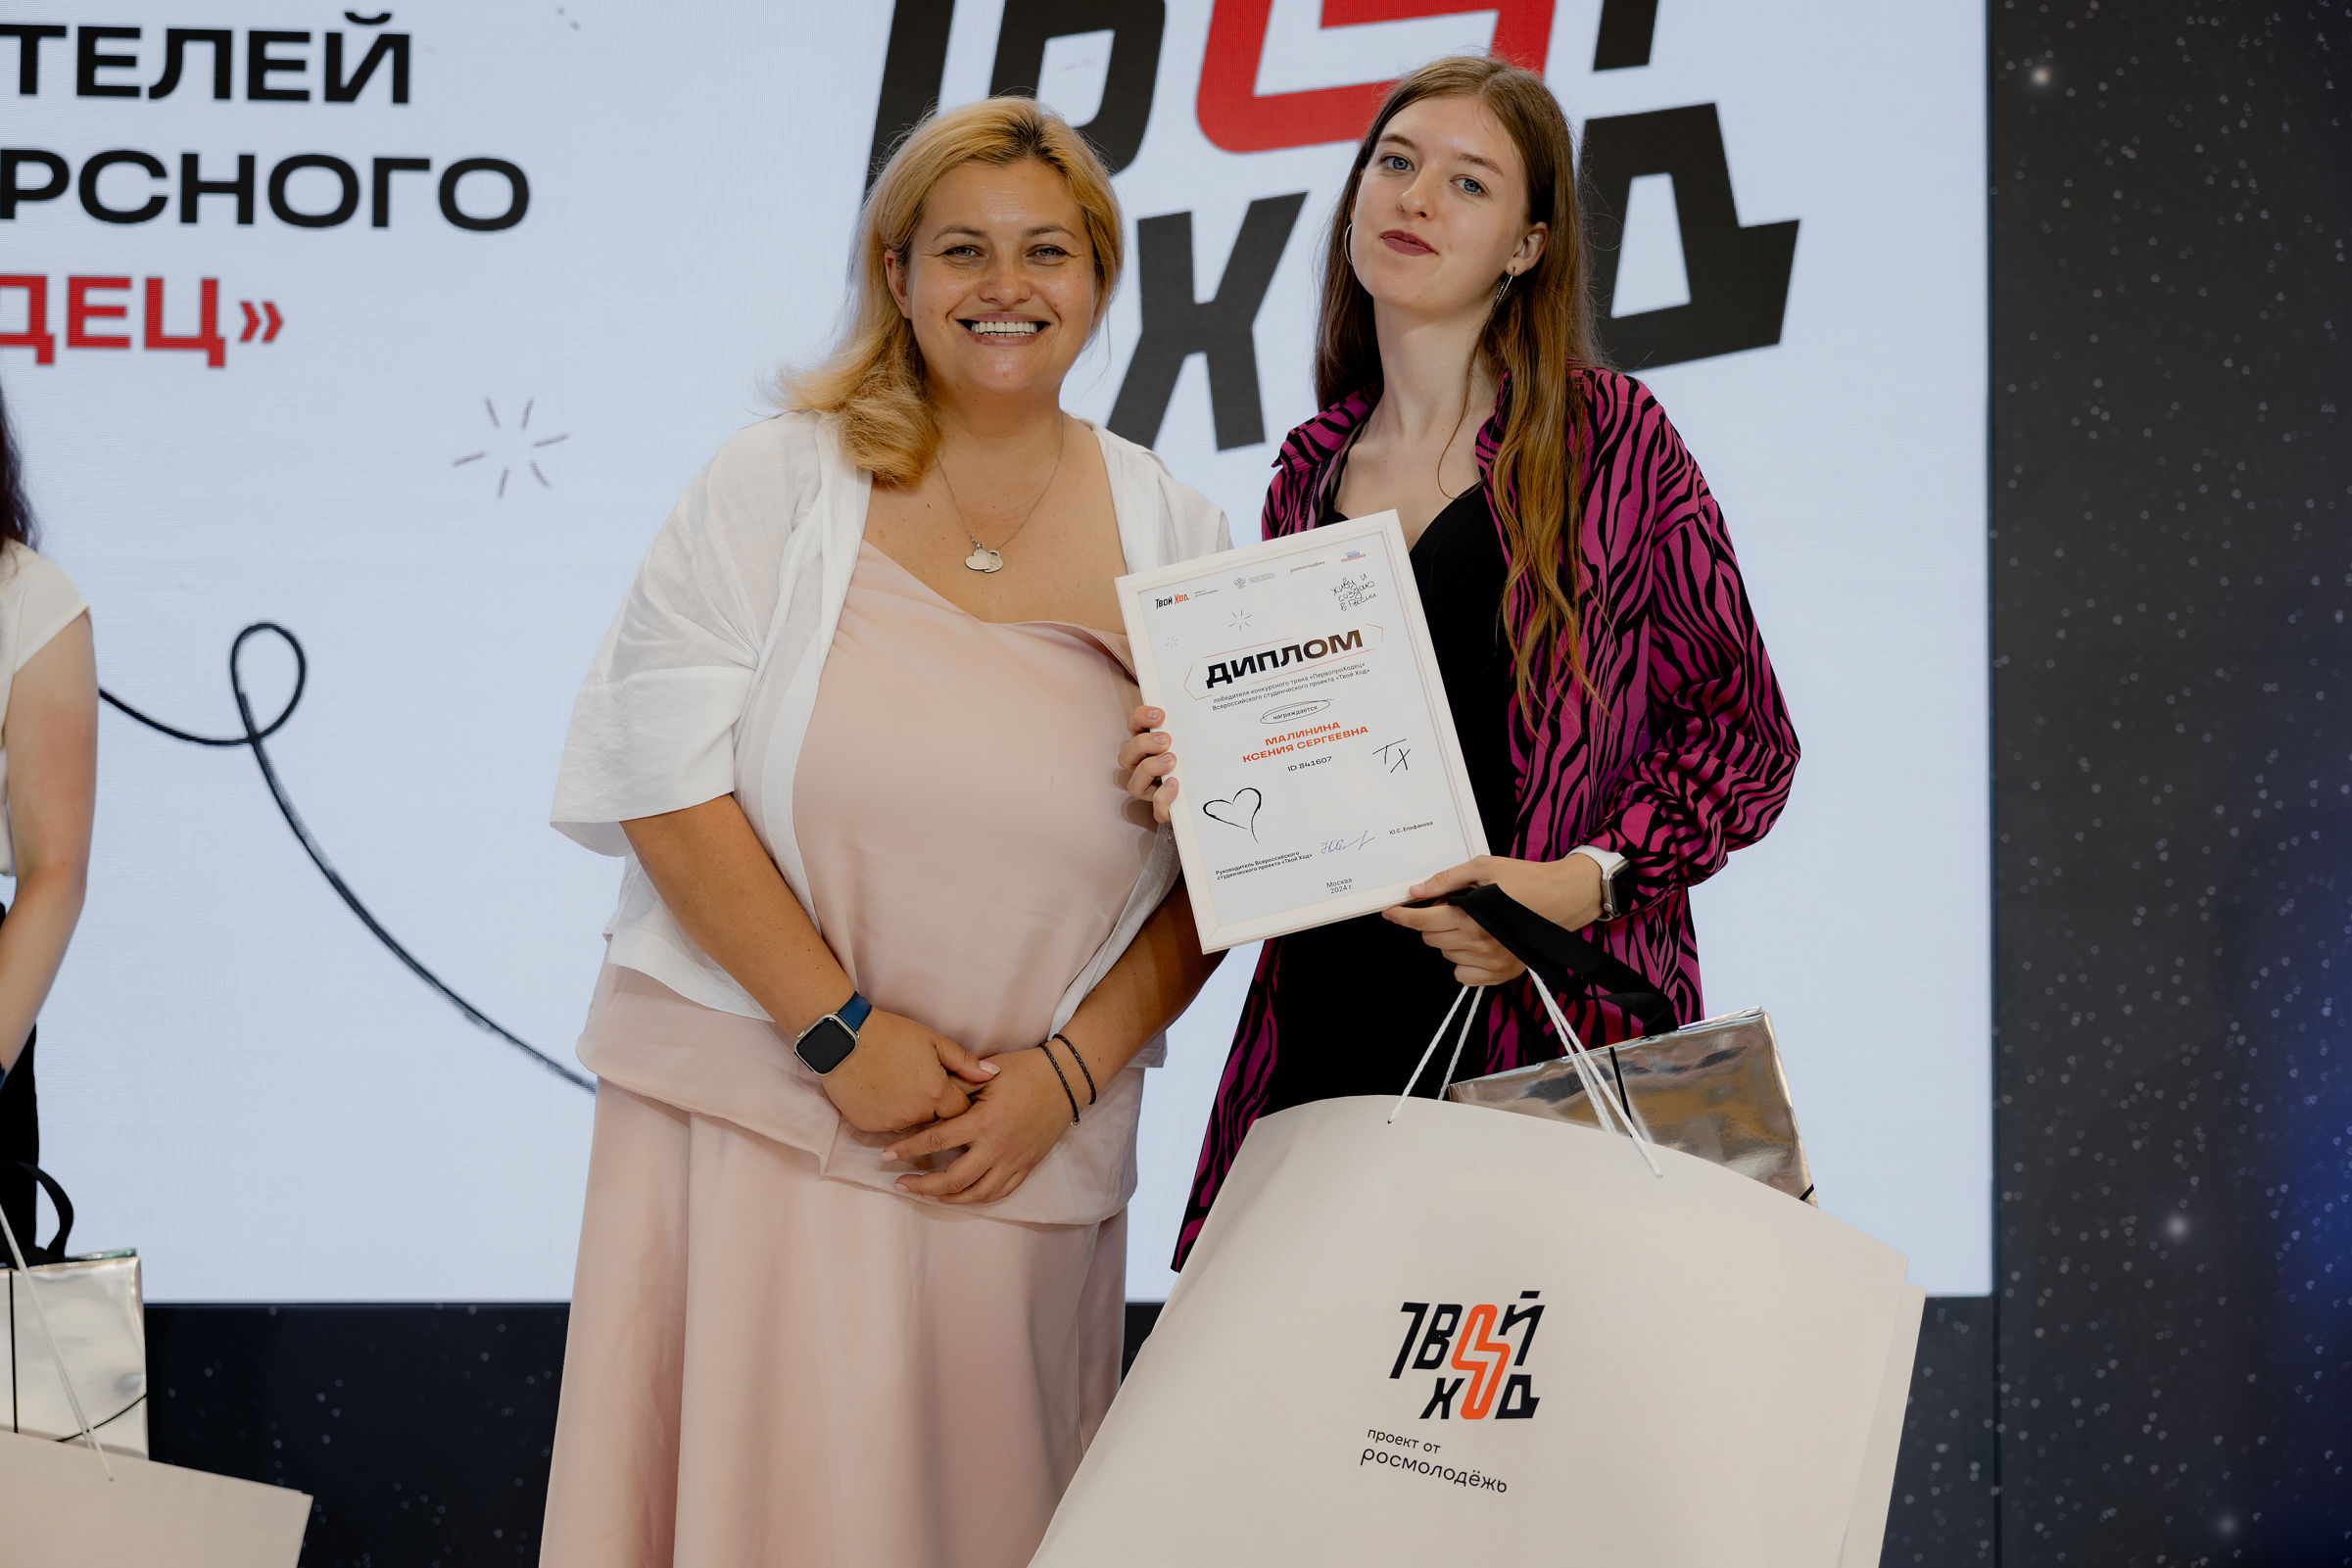 Четверо ярославцев стали победителями всероссийского студенческого проекта «Твой ход»